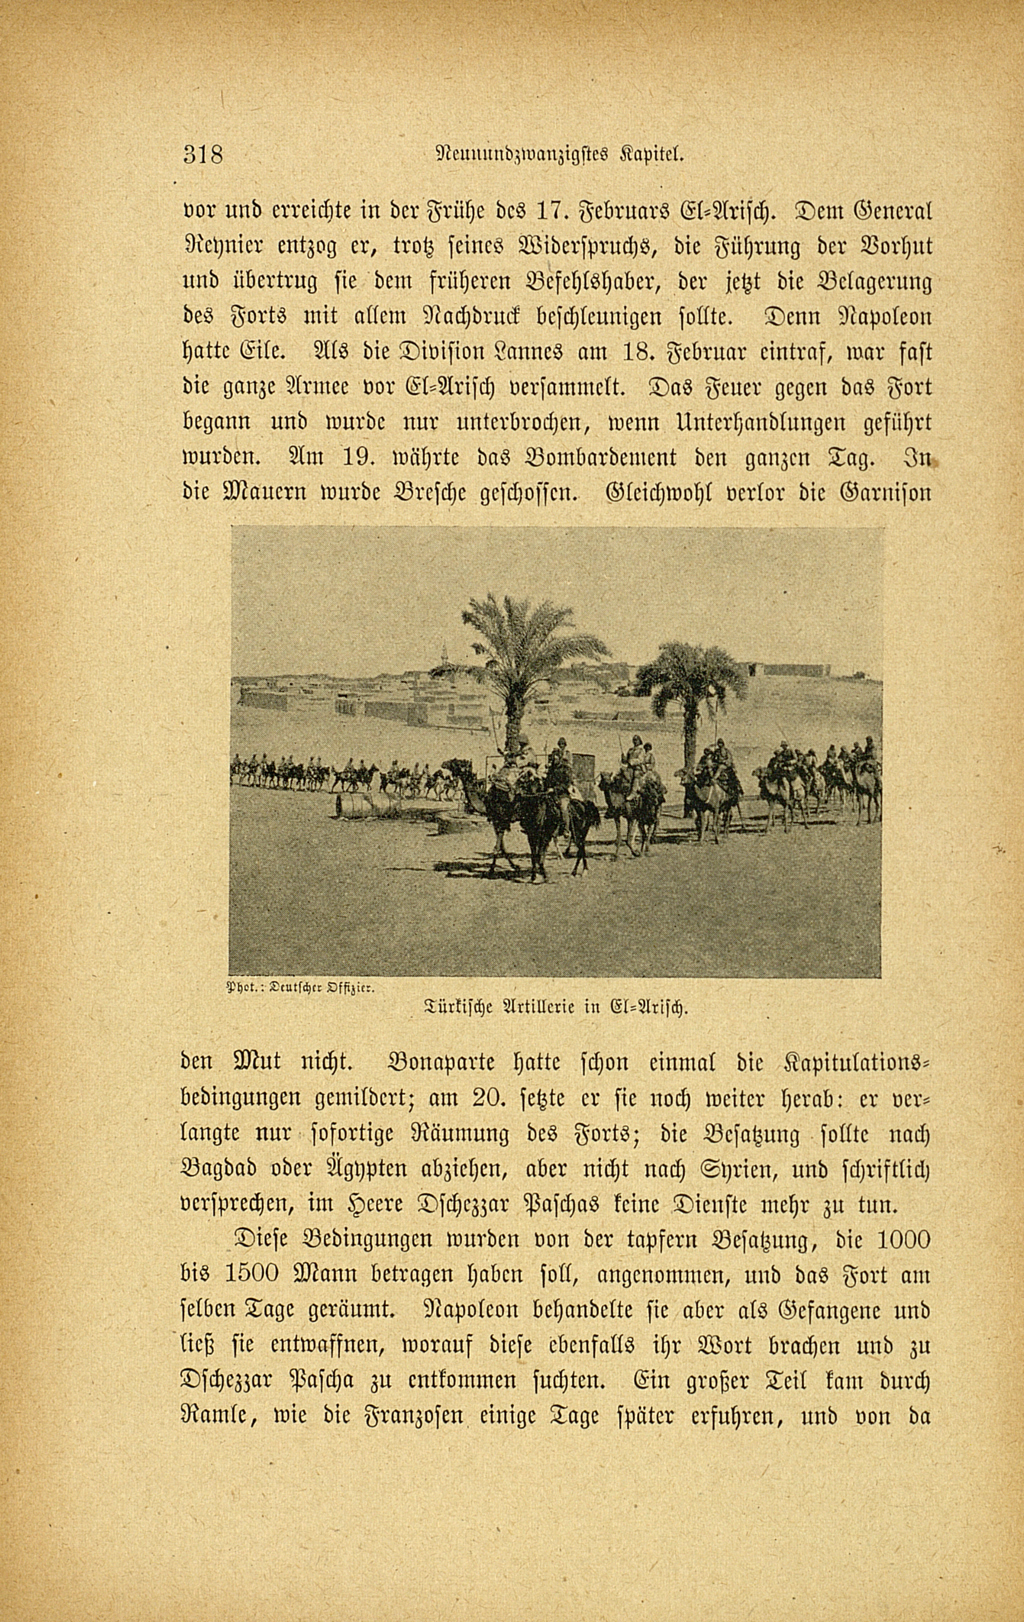 Zu sehen ist eine Buchseite mit Text und einer Abbildung. Die Abbildung zeigt eine arabische Karawane in einer Wüstenlandschaft. Im Hintergrund lässt sich eine Siedlung erkennen. Die Buchseite stammt aus folgender Veröffentlichung: Hedin, Sven Anders: Jerusalem. Leipzig: Brockhaus, 1918.